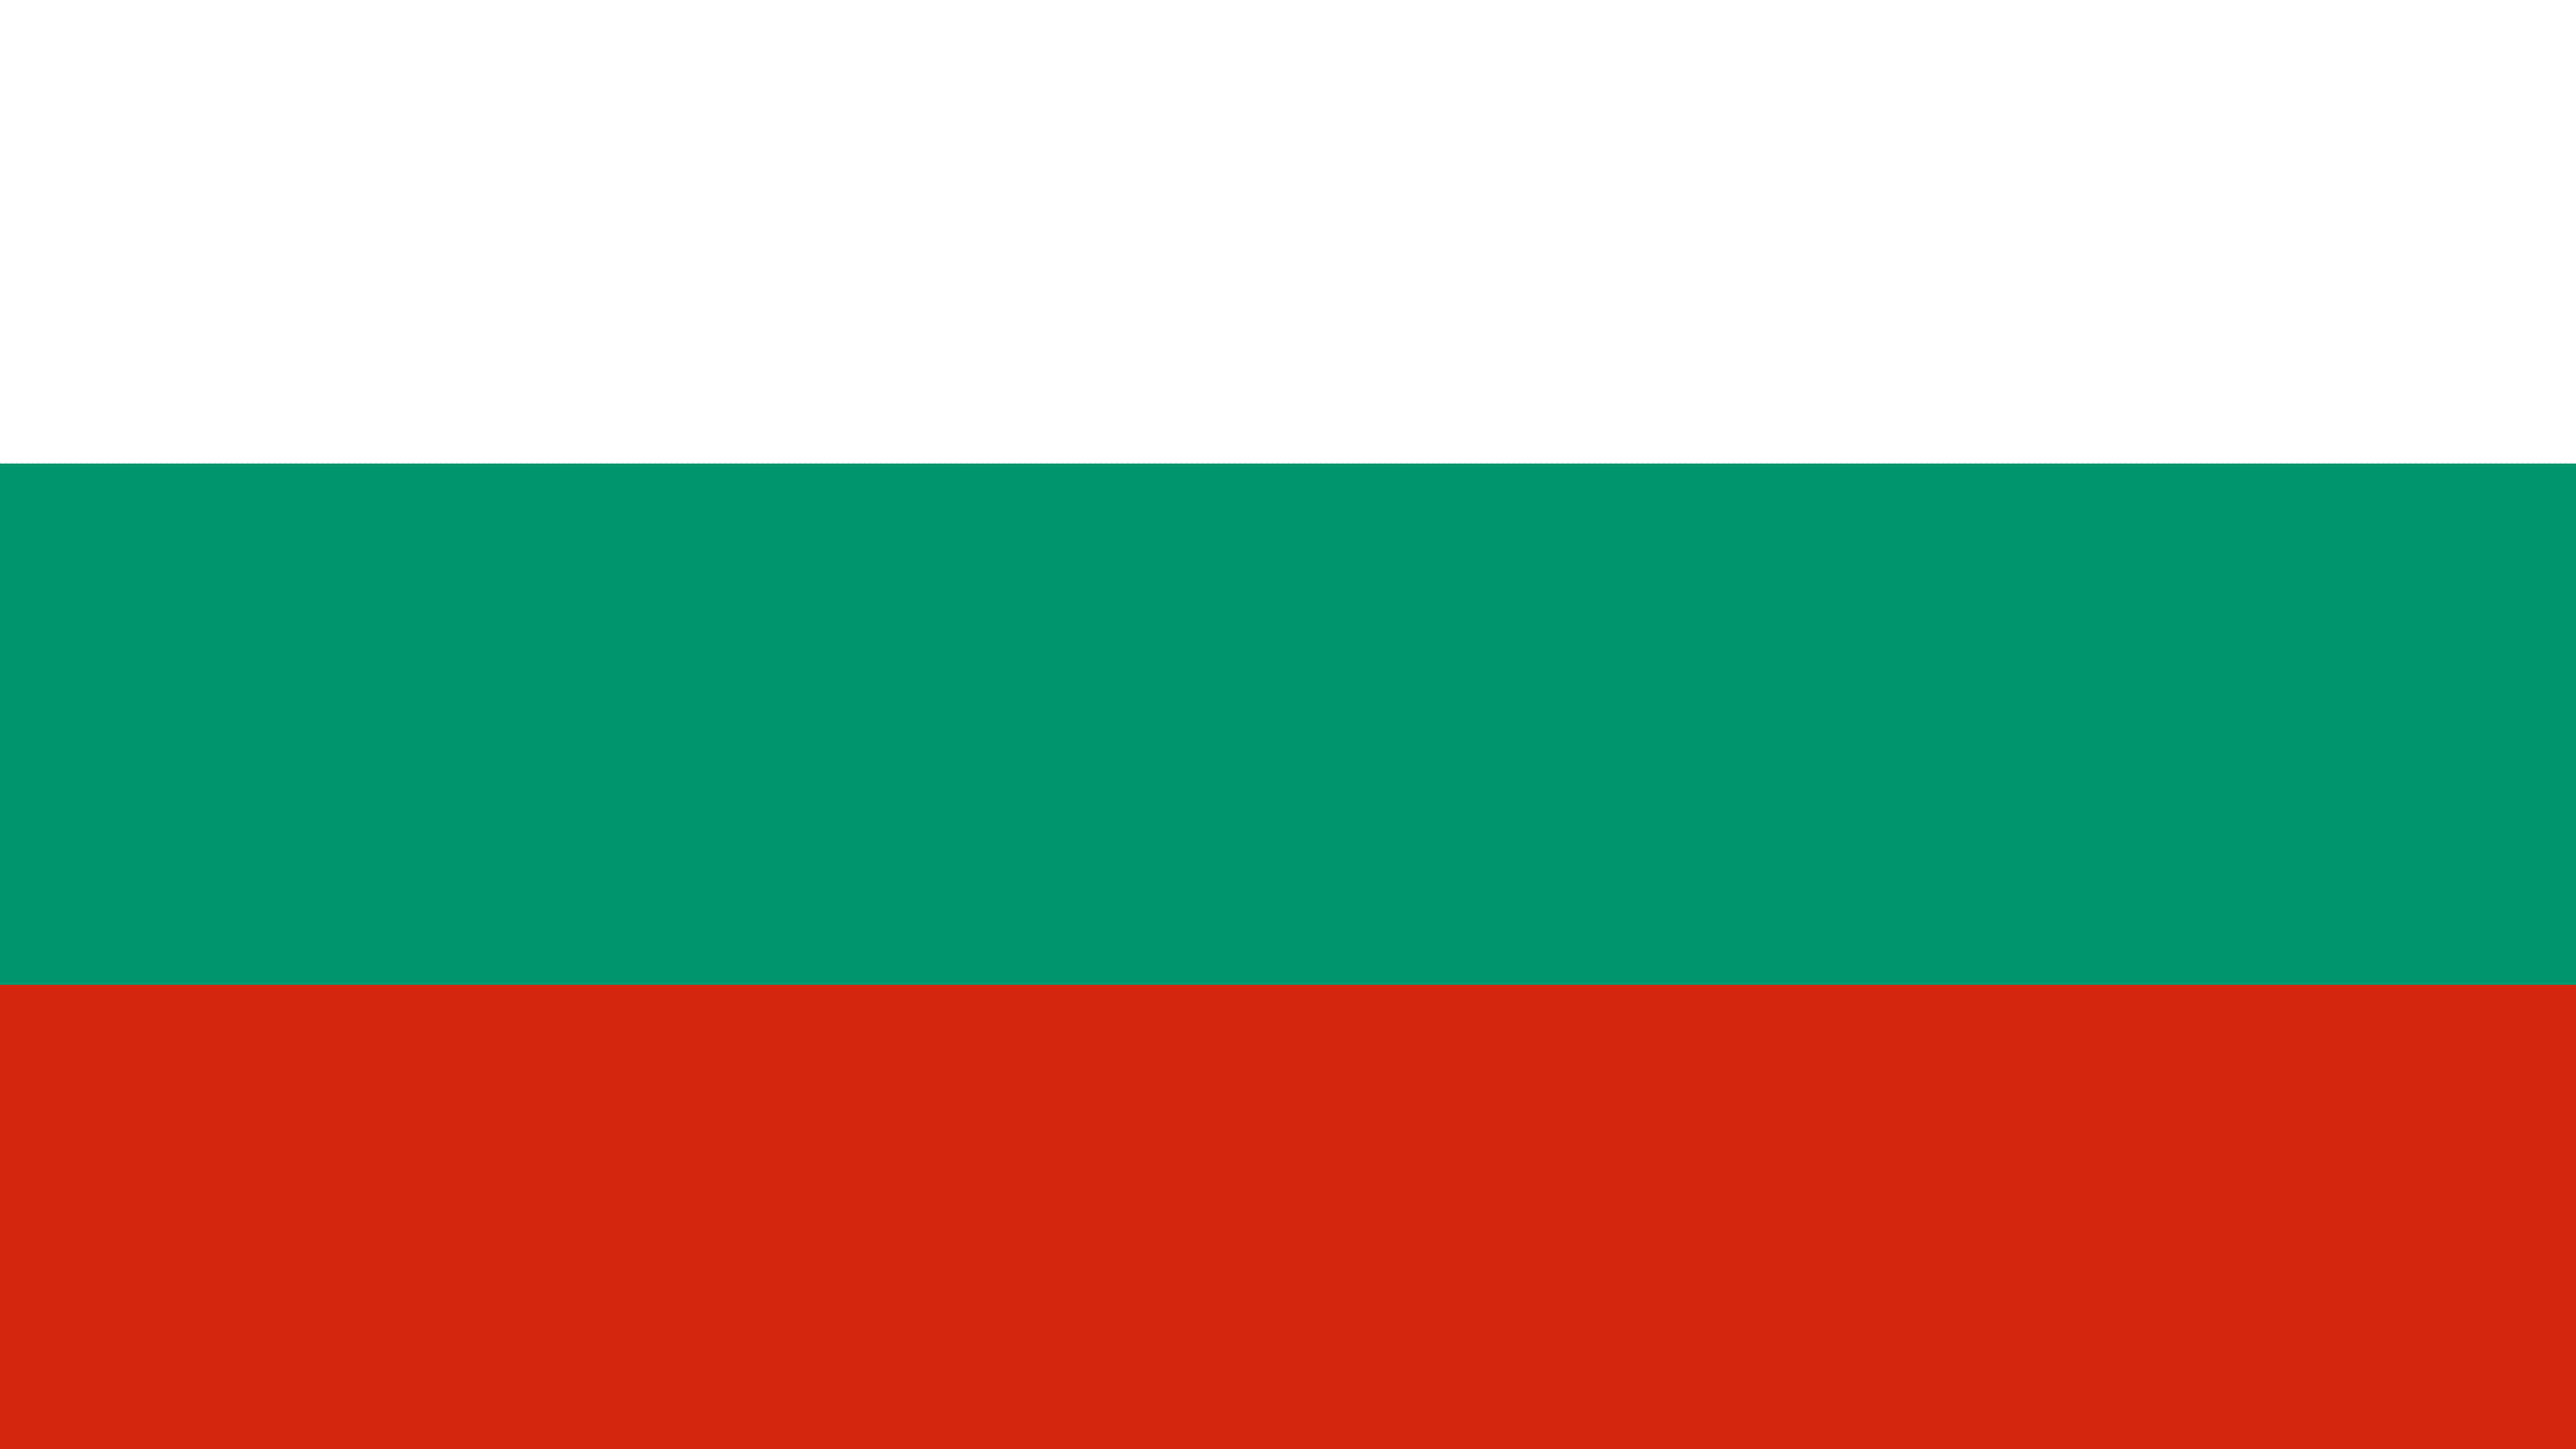 Bulgaria Flag Wallpapers - Wallpaper Cave 00B